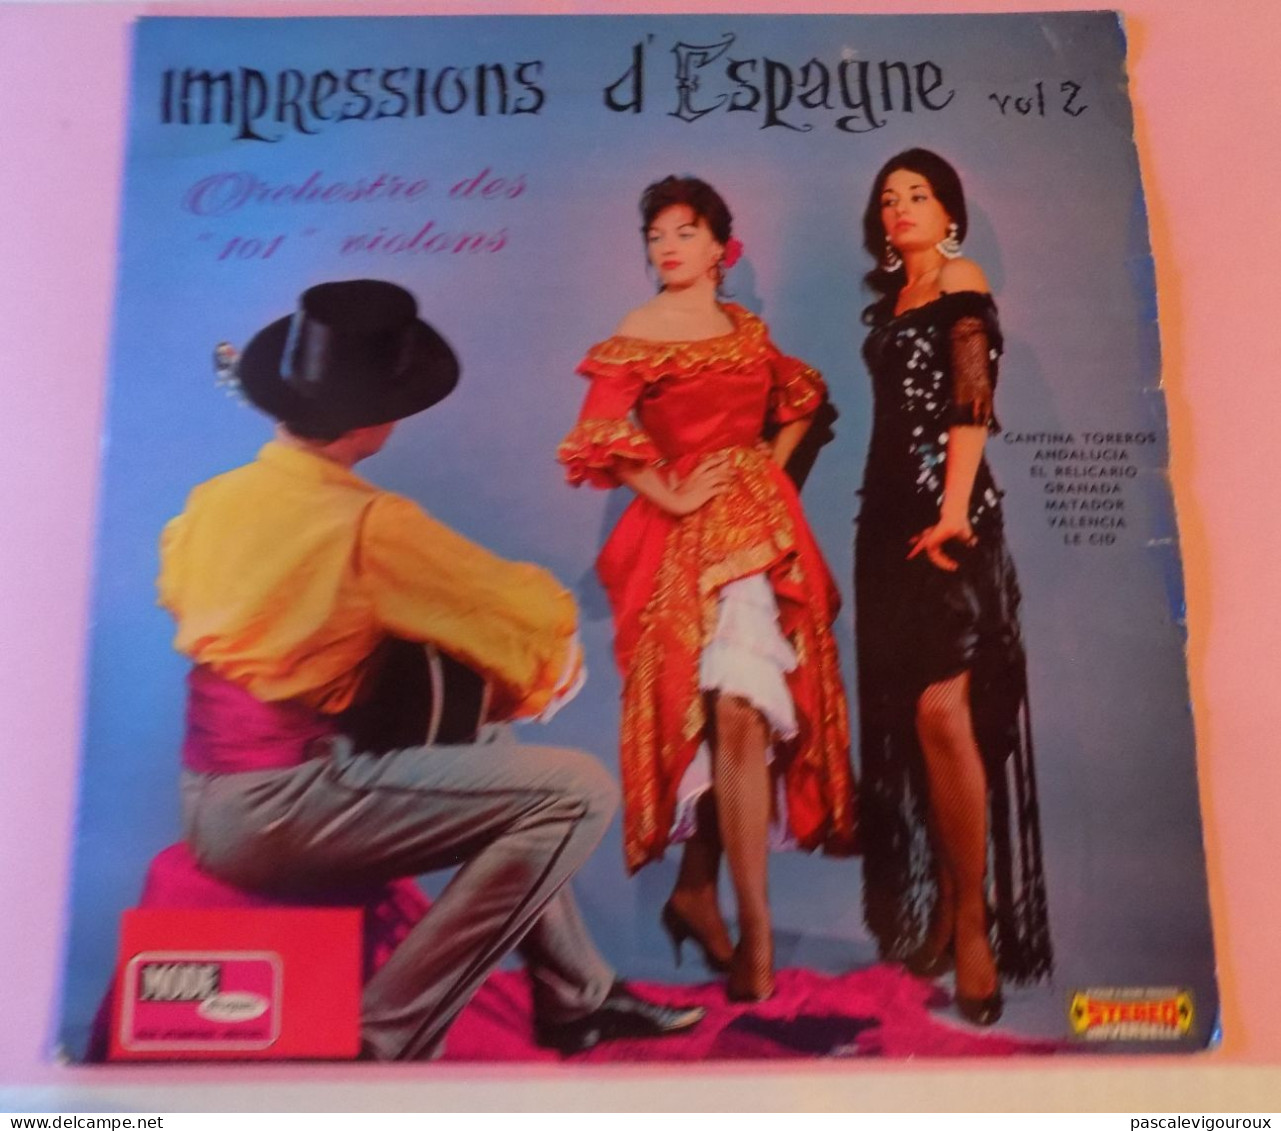 Orchestre Des "101" Violons* ‎– Impressions D'Espagne Vol. 2 - Other - Spanish Music